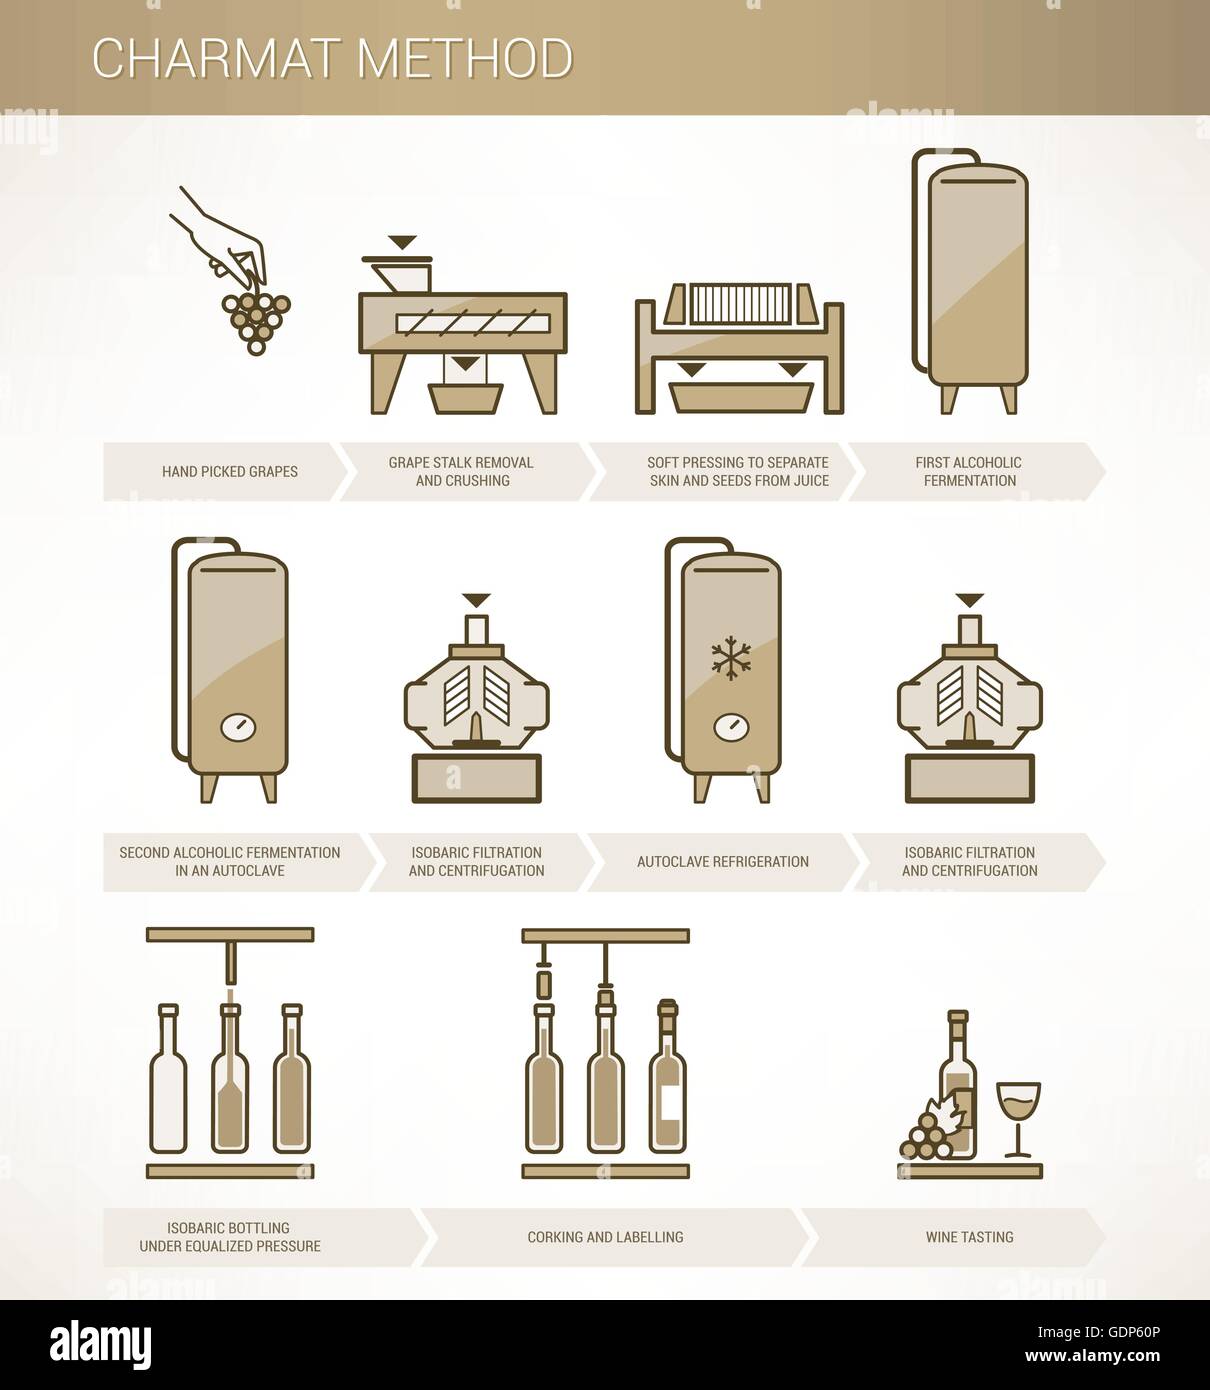 Procédure de vinification du raisin au vin : méthode Charmat infographie Illustration de Vecteur